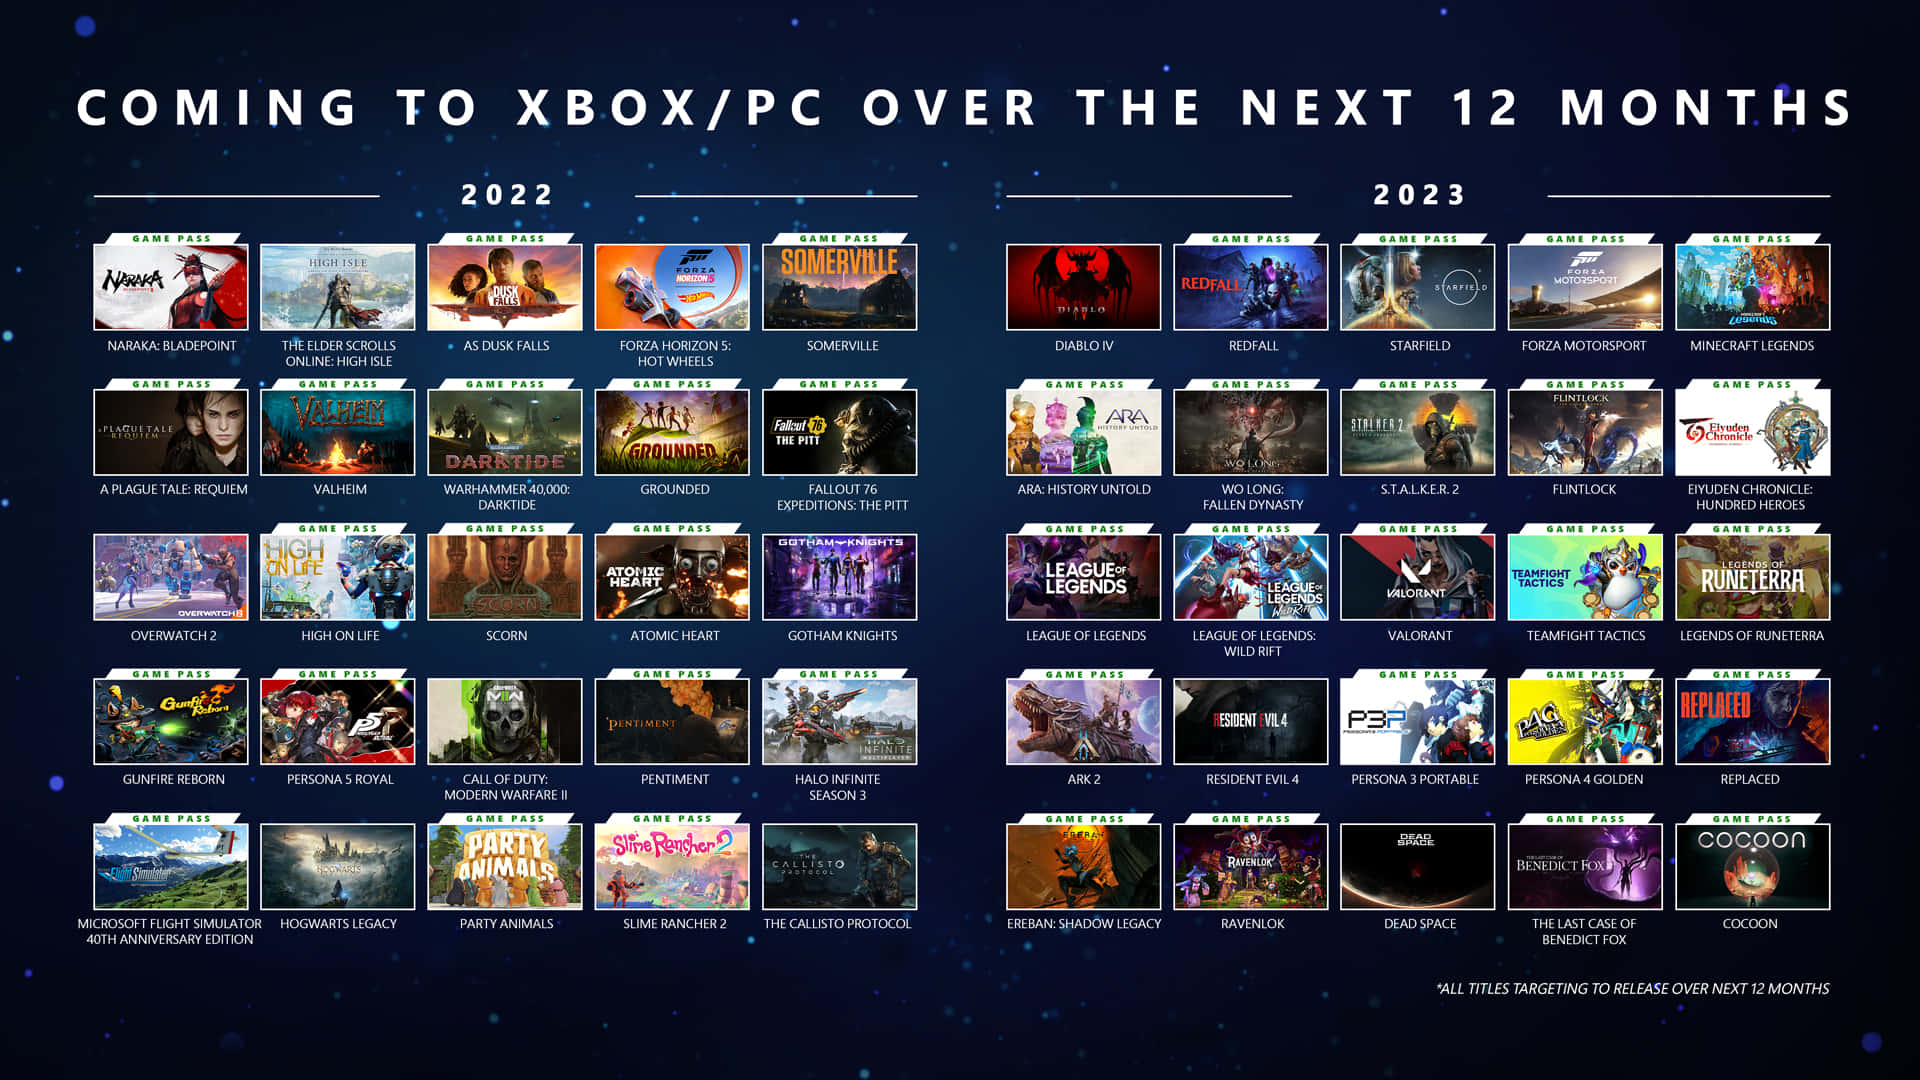 Xboxpc Kommer Till Xbox Under De Närmaste 12 Månaderna.